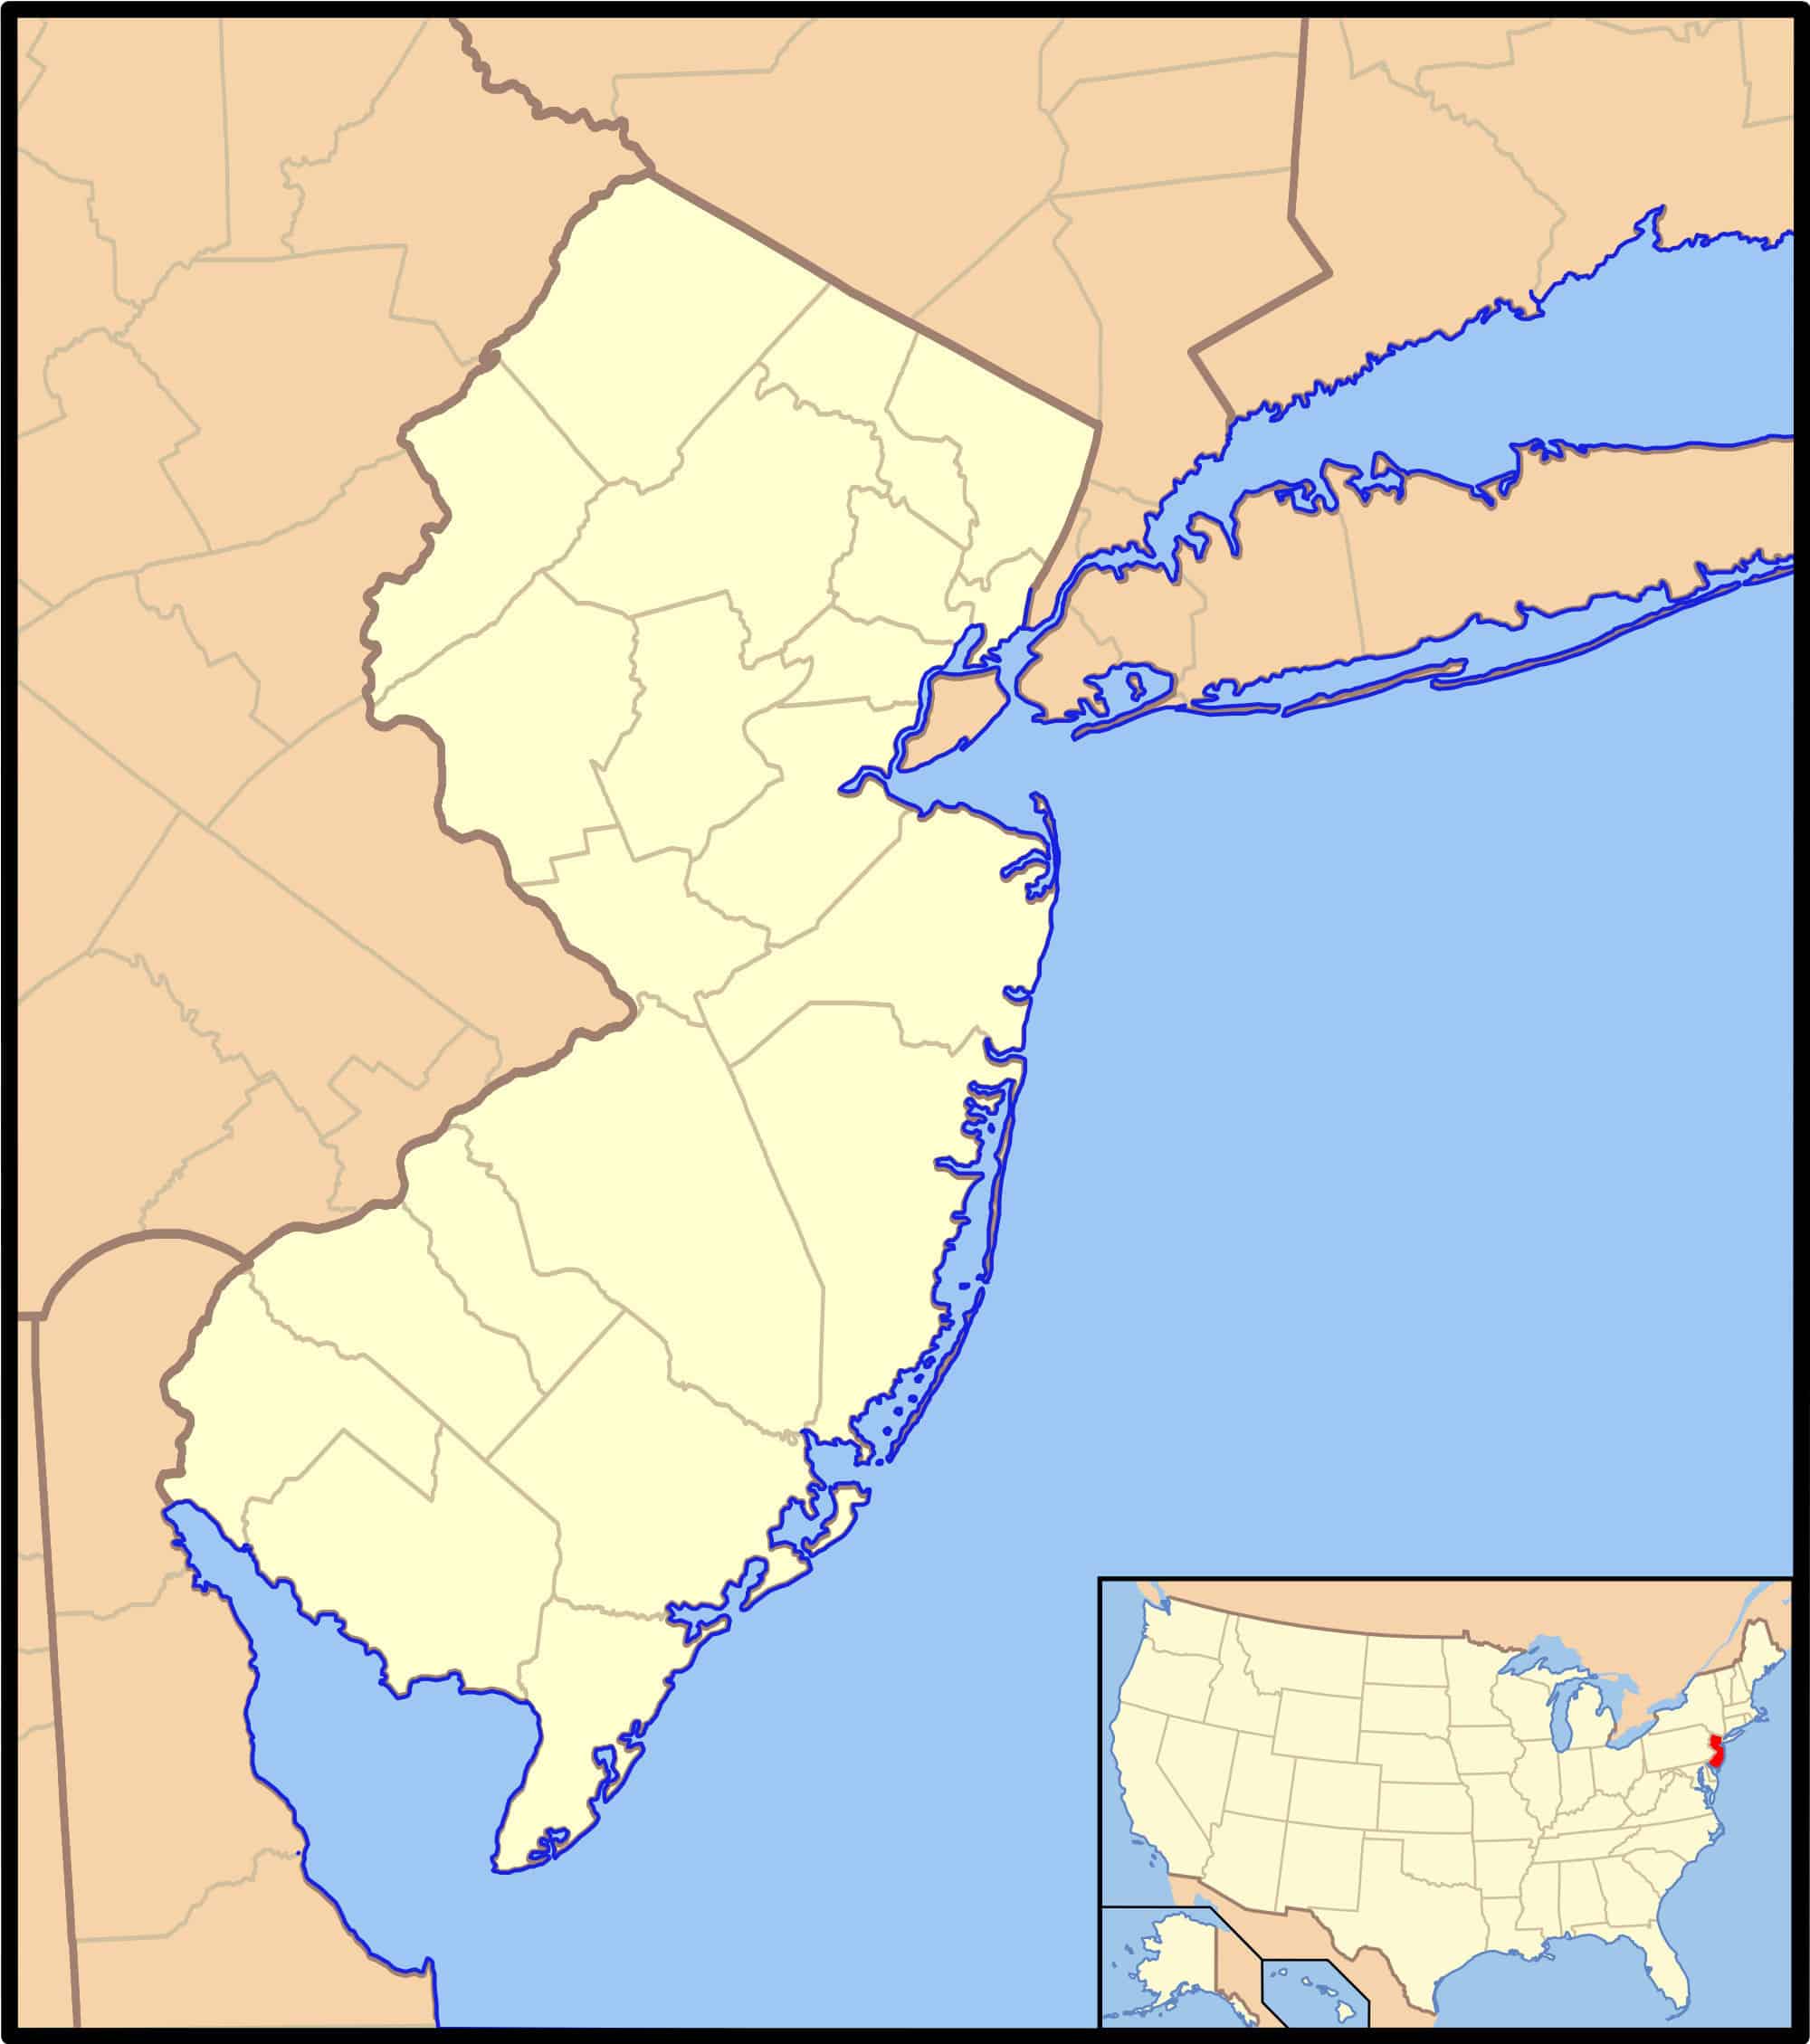 Mappa di localizzazione del New Jersey con la sua posizione negli Stati Uniti come riquadro